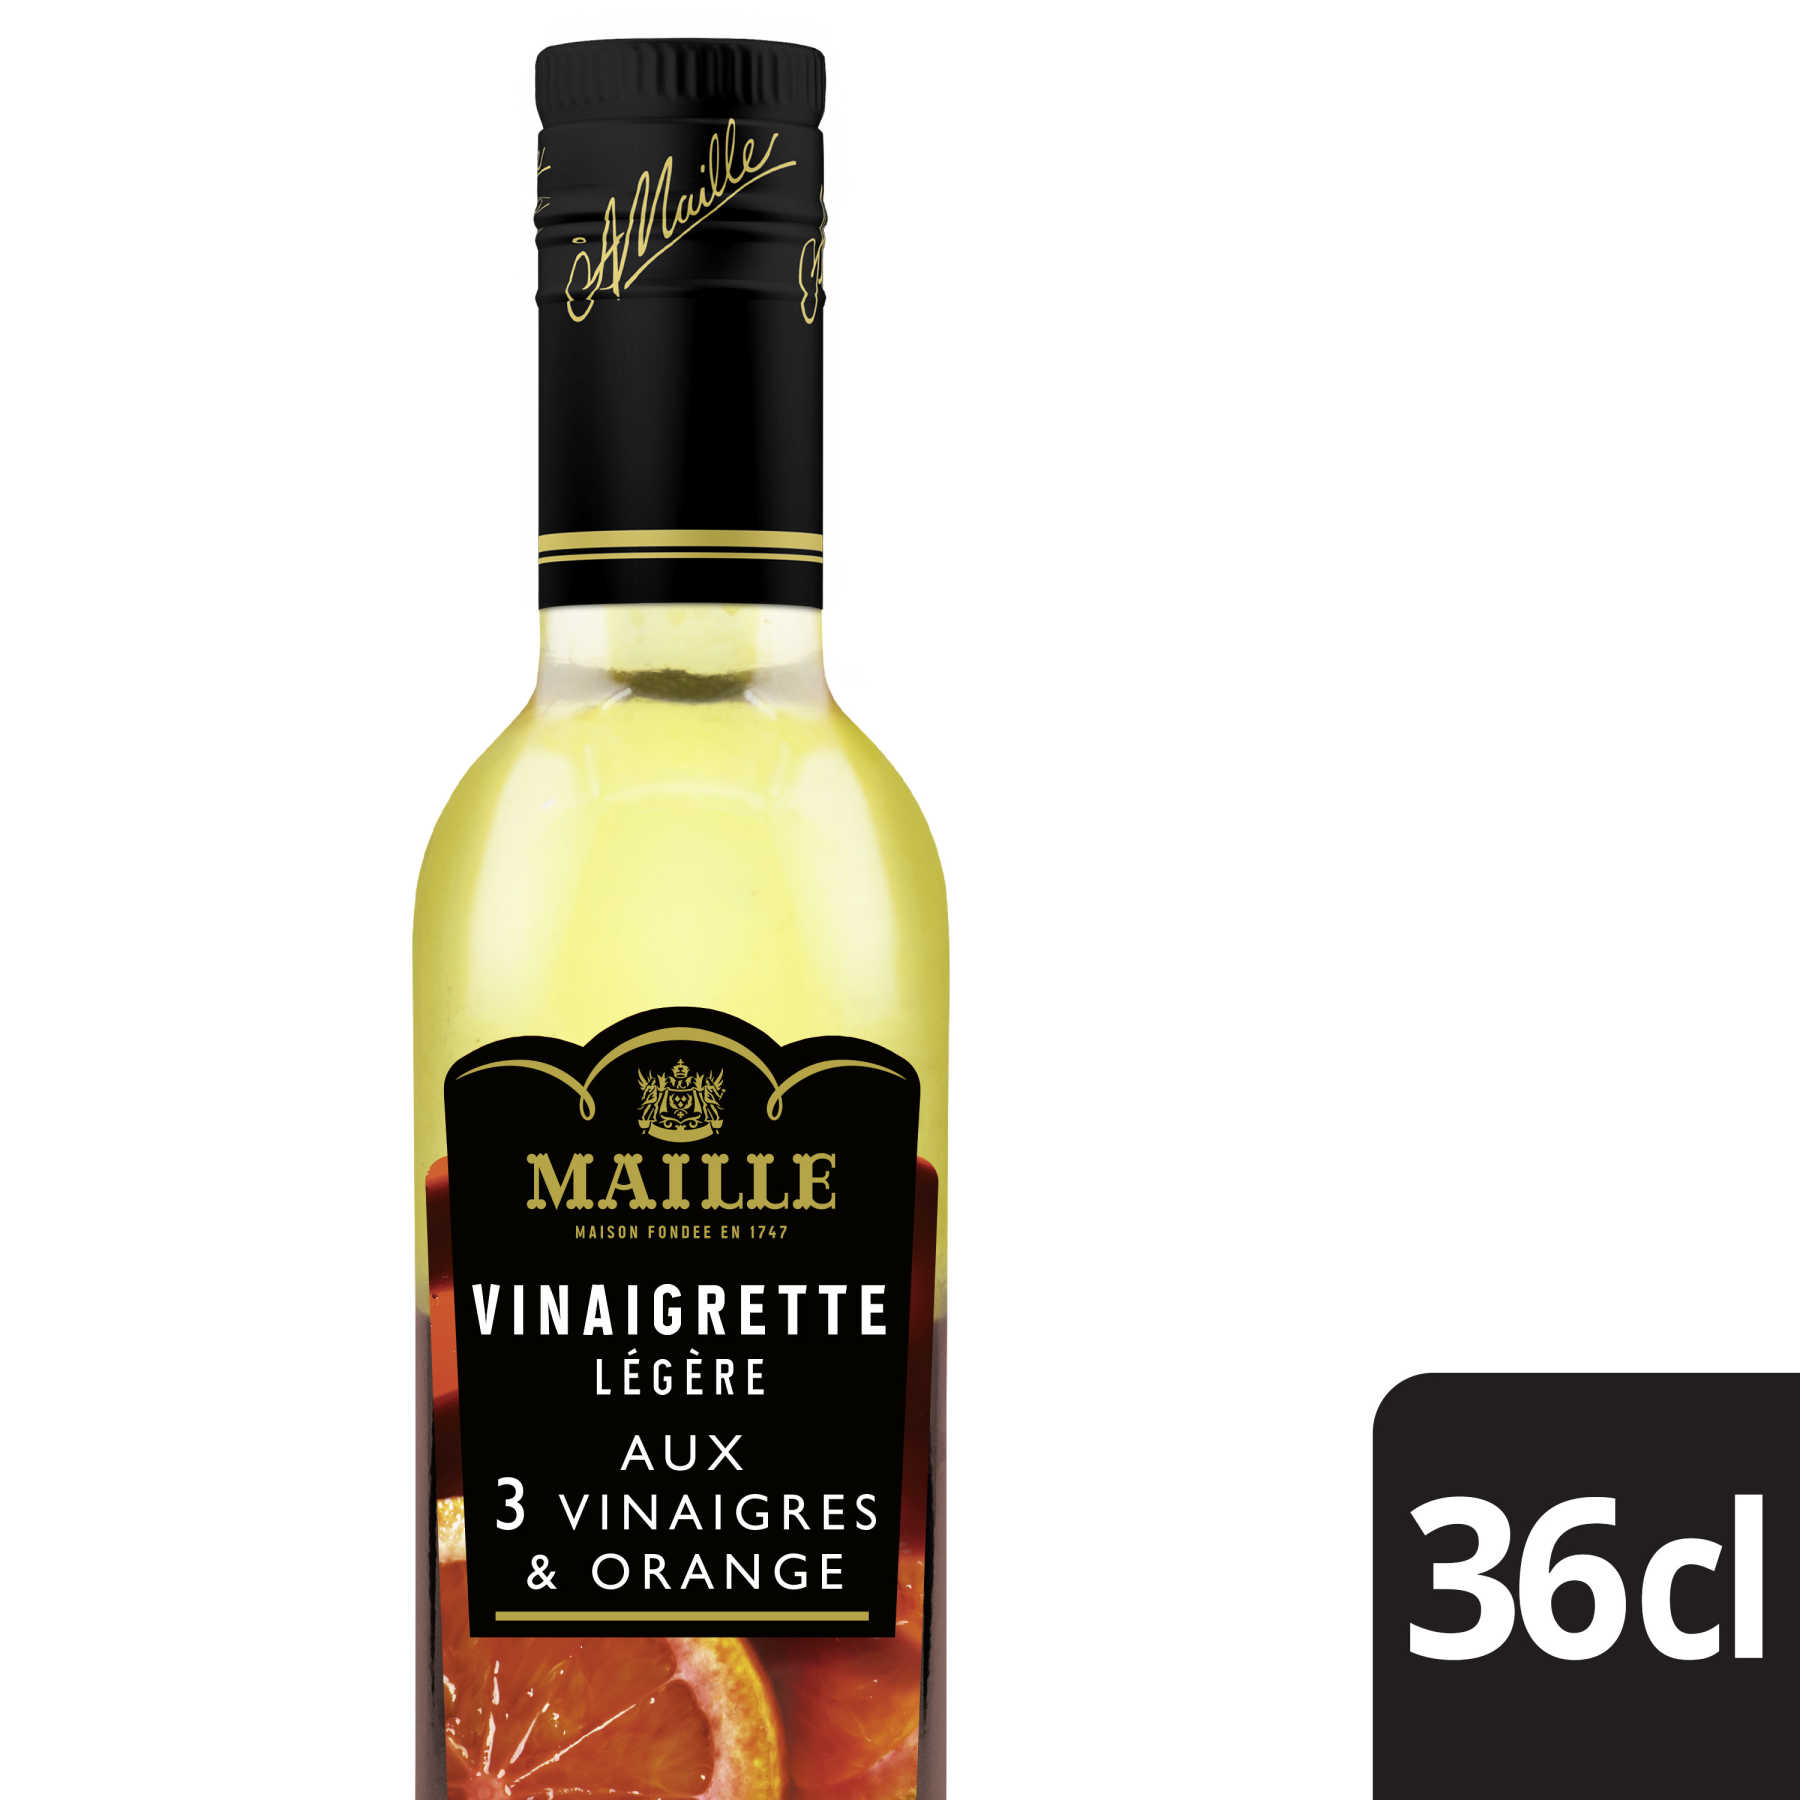 Maille - Vinaigrette Légère aux 3 Vinaigres Pointe d'Orange 36 cl